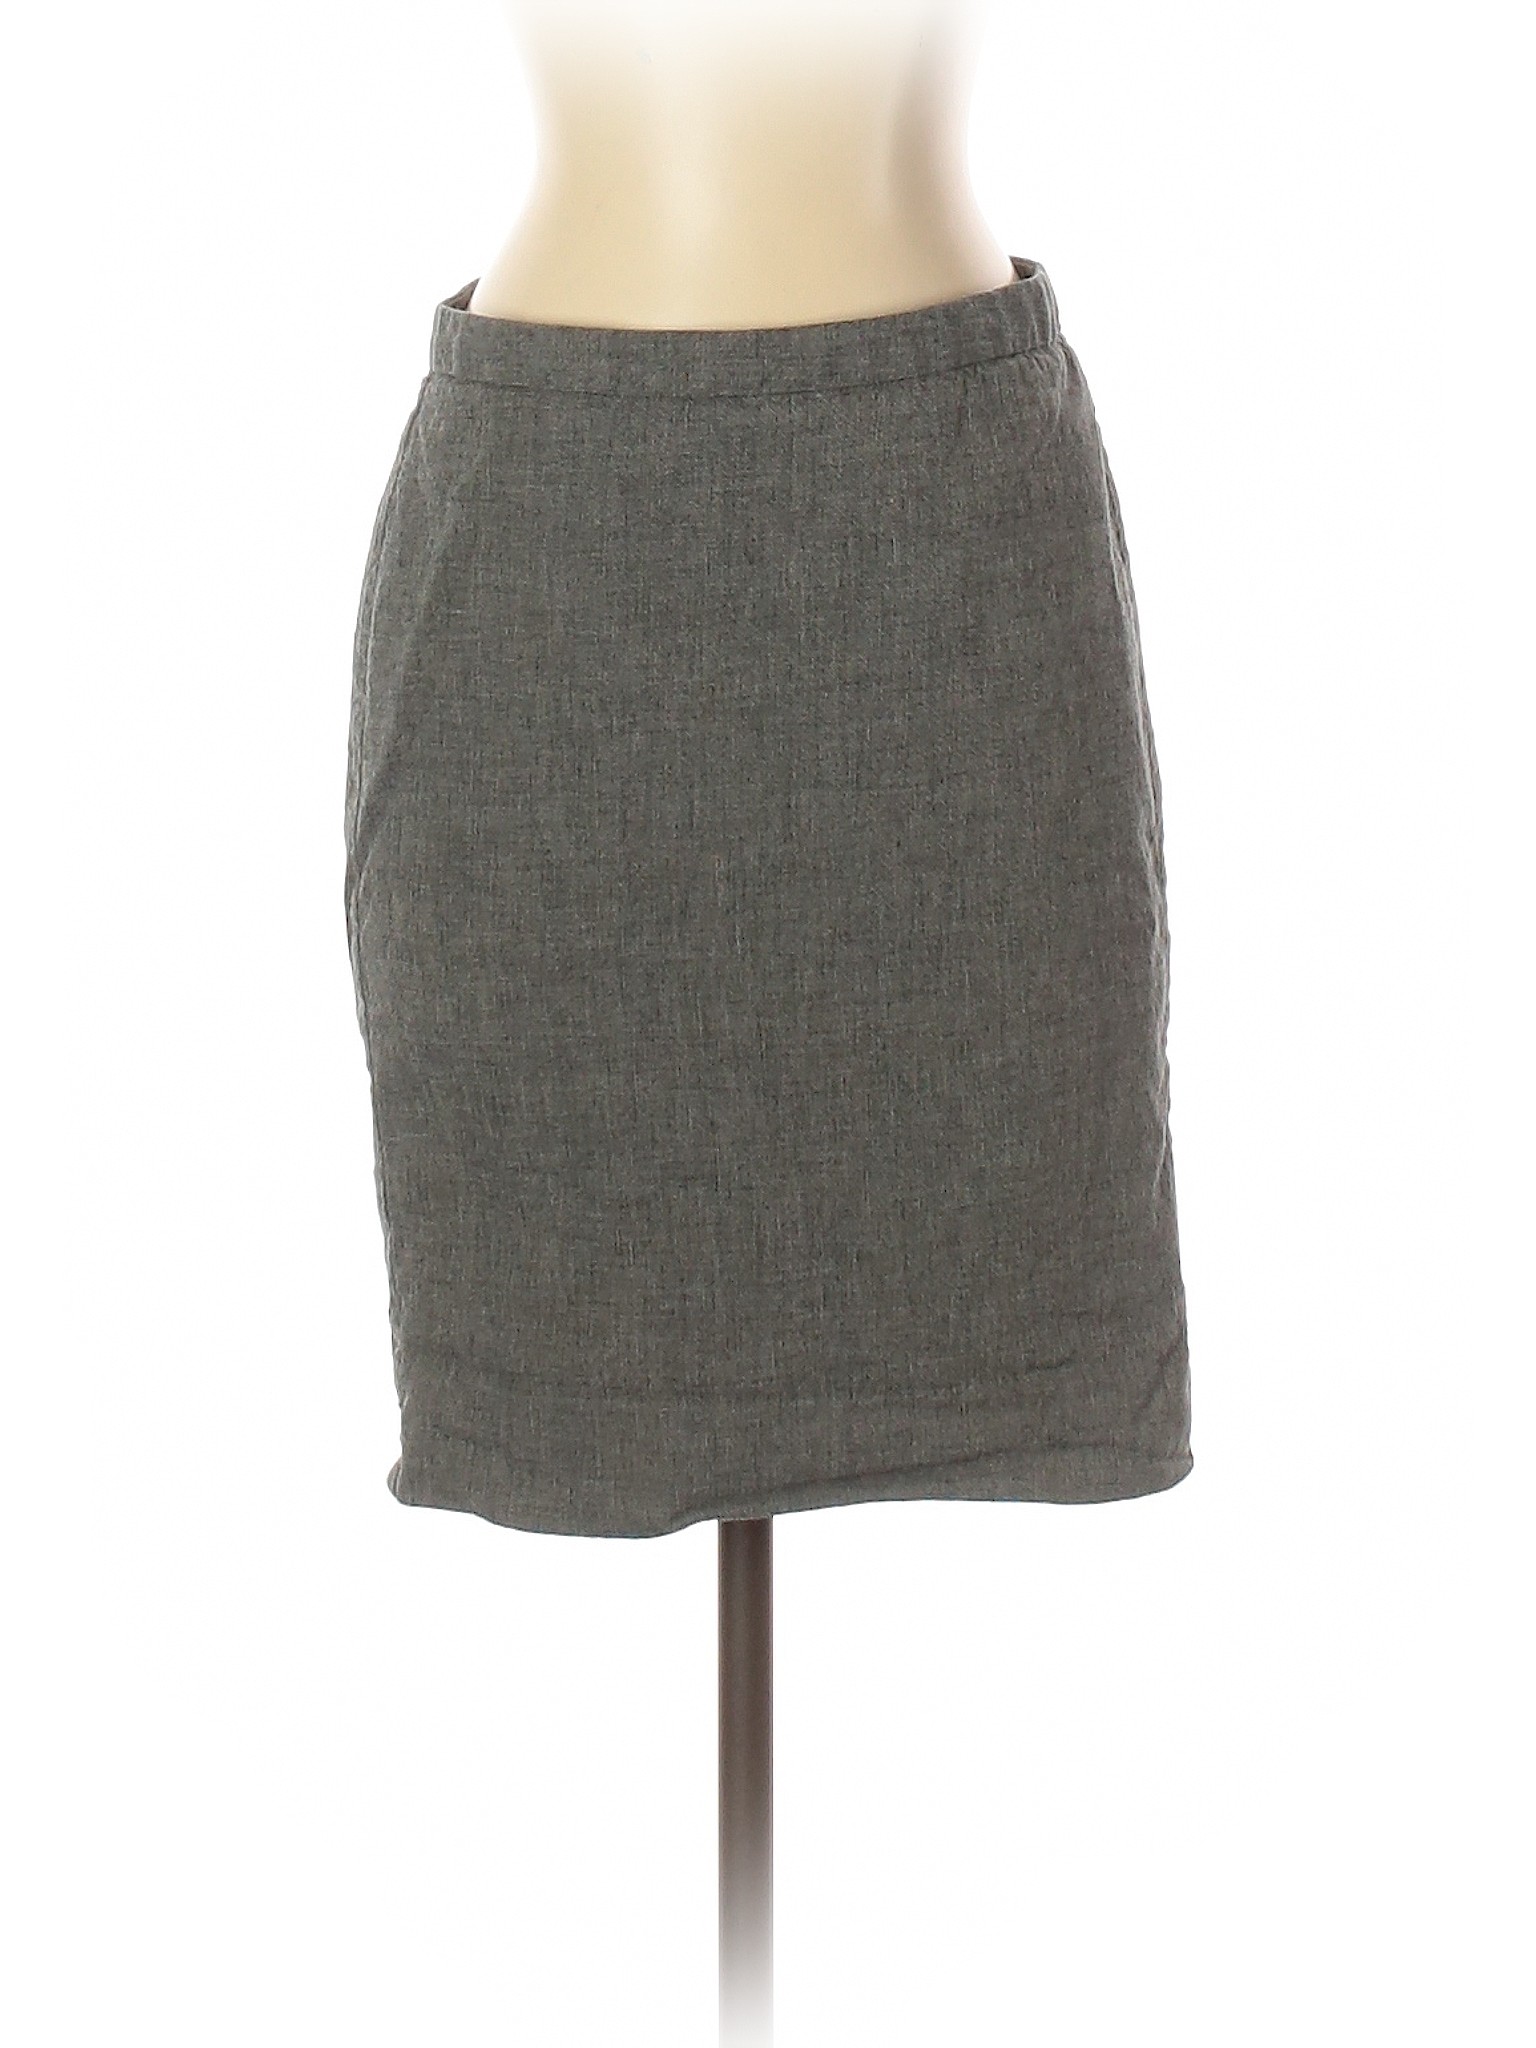 Gap Women Gray Denim Skirt 1 | eBay